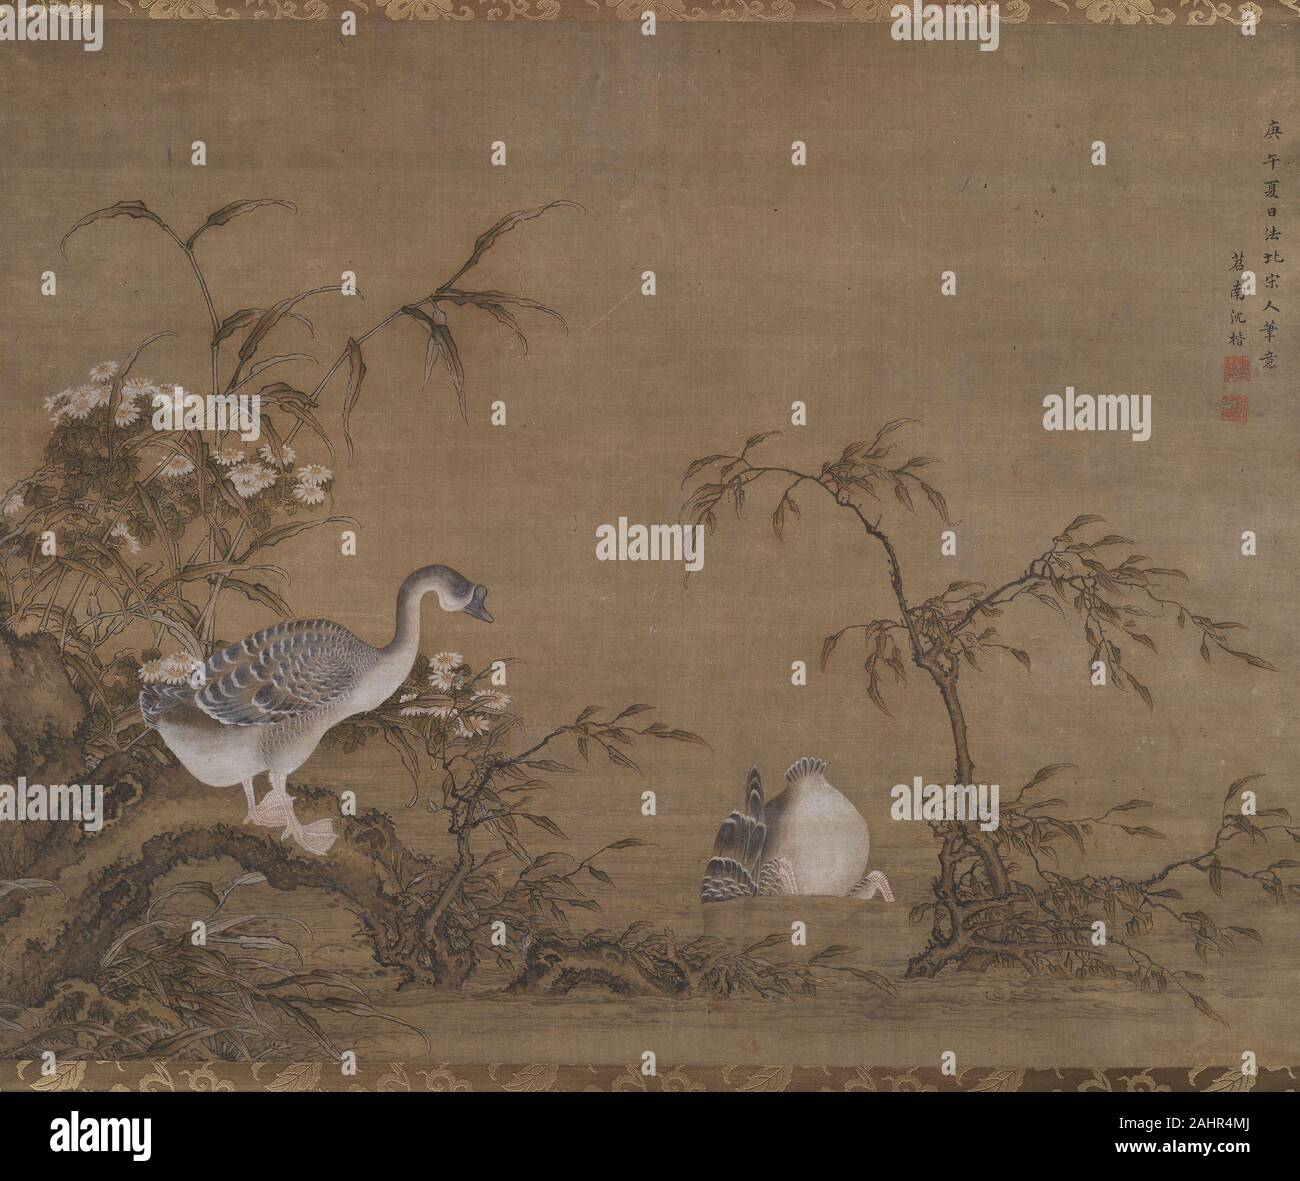 Shen Kai. Oies dans une rivière. 1750. La Chine. Hanging scroll, encre et couleur sur soie Banque D'Images